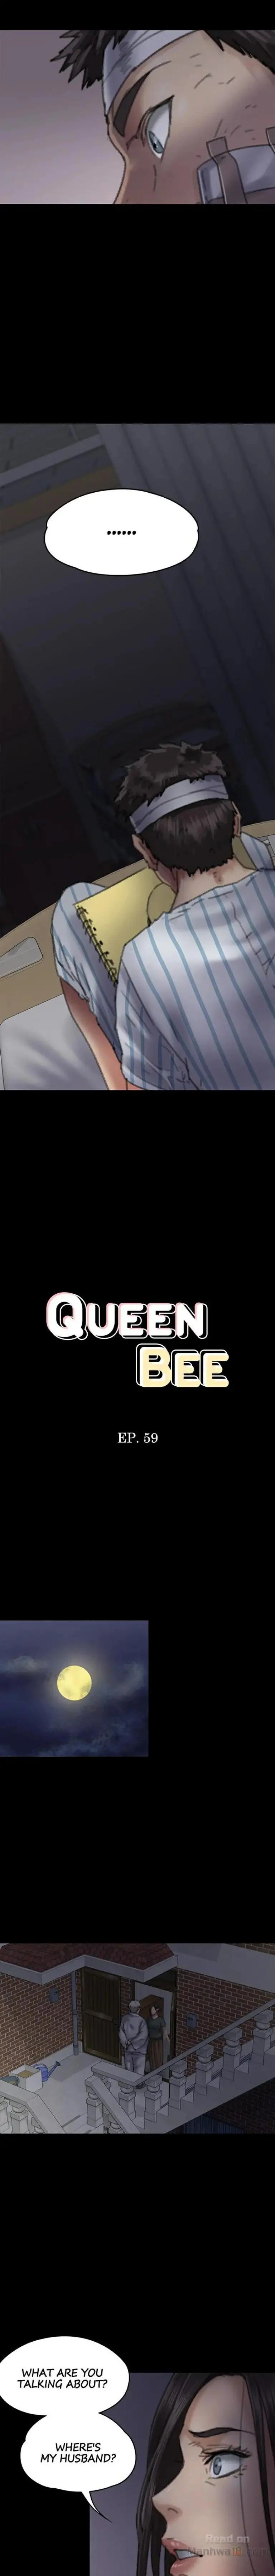 queen-bee-chap-59-1